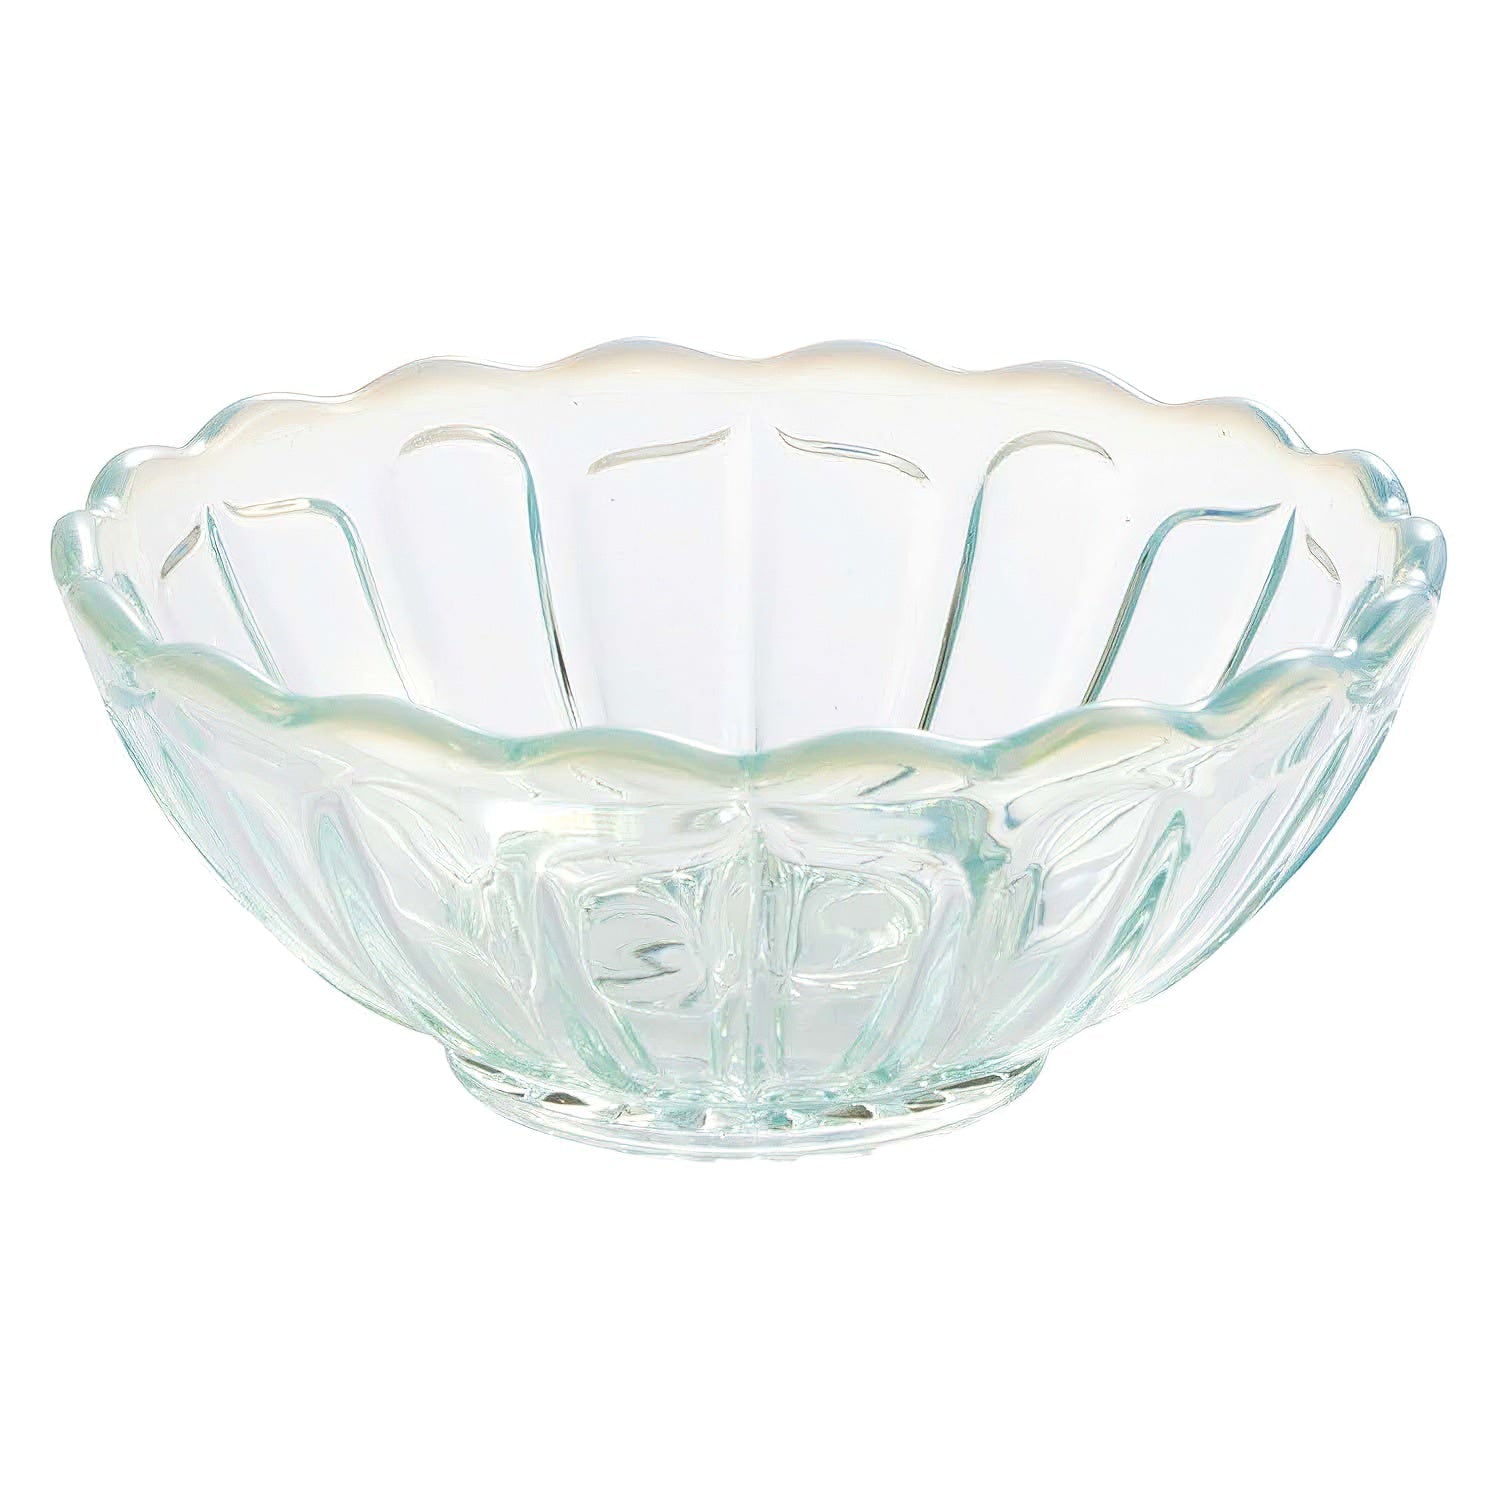 Hirota Glass Japan Yukinohana Blue Small Bowl - Premium Soda-Lime Glass